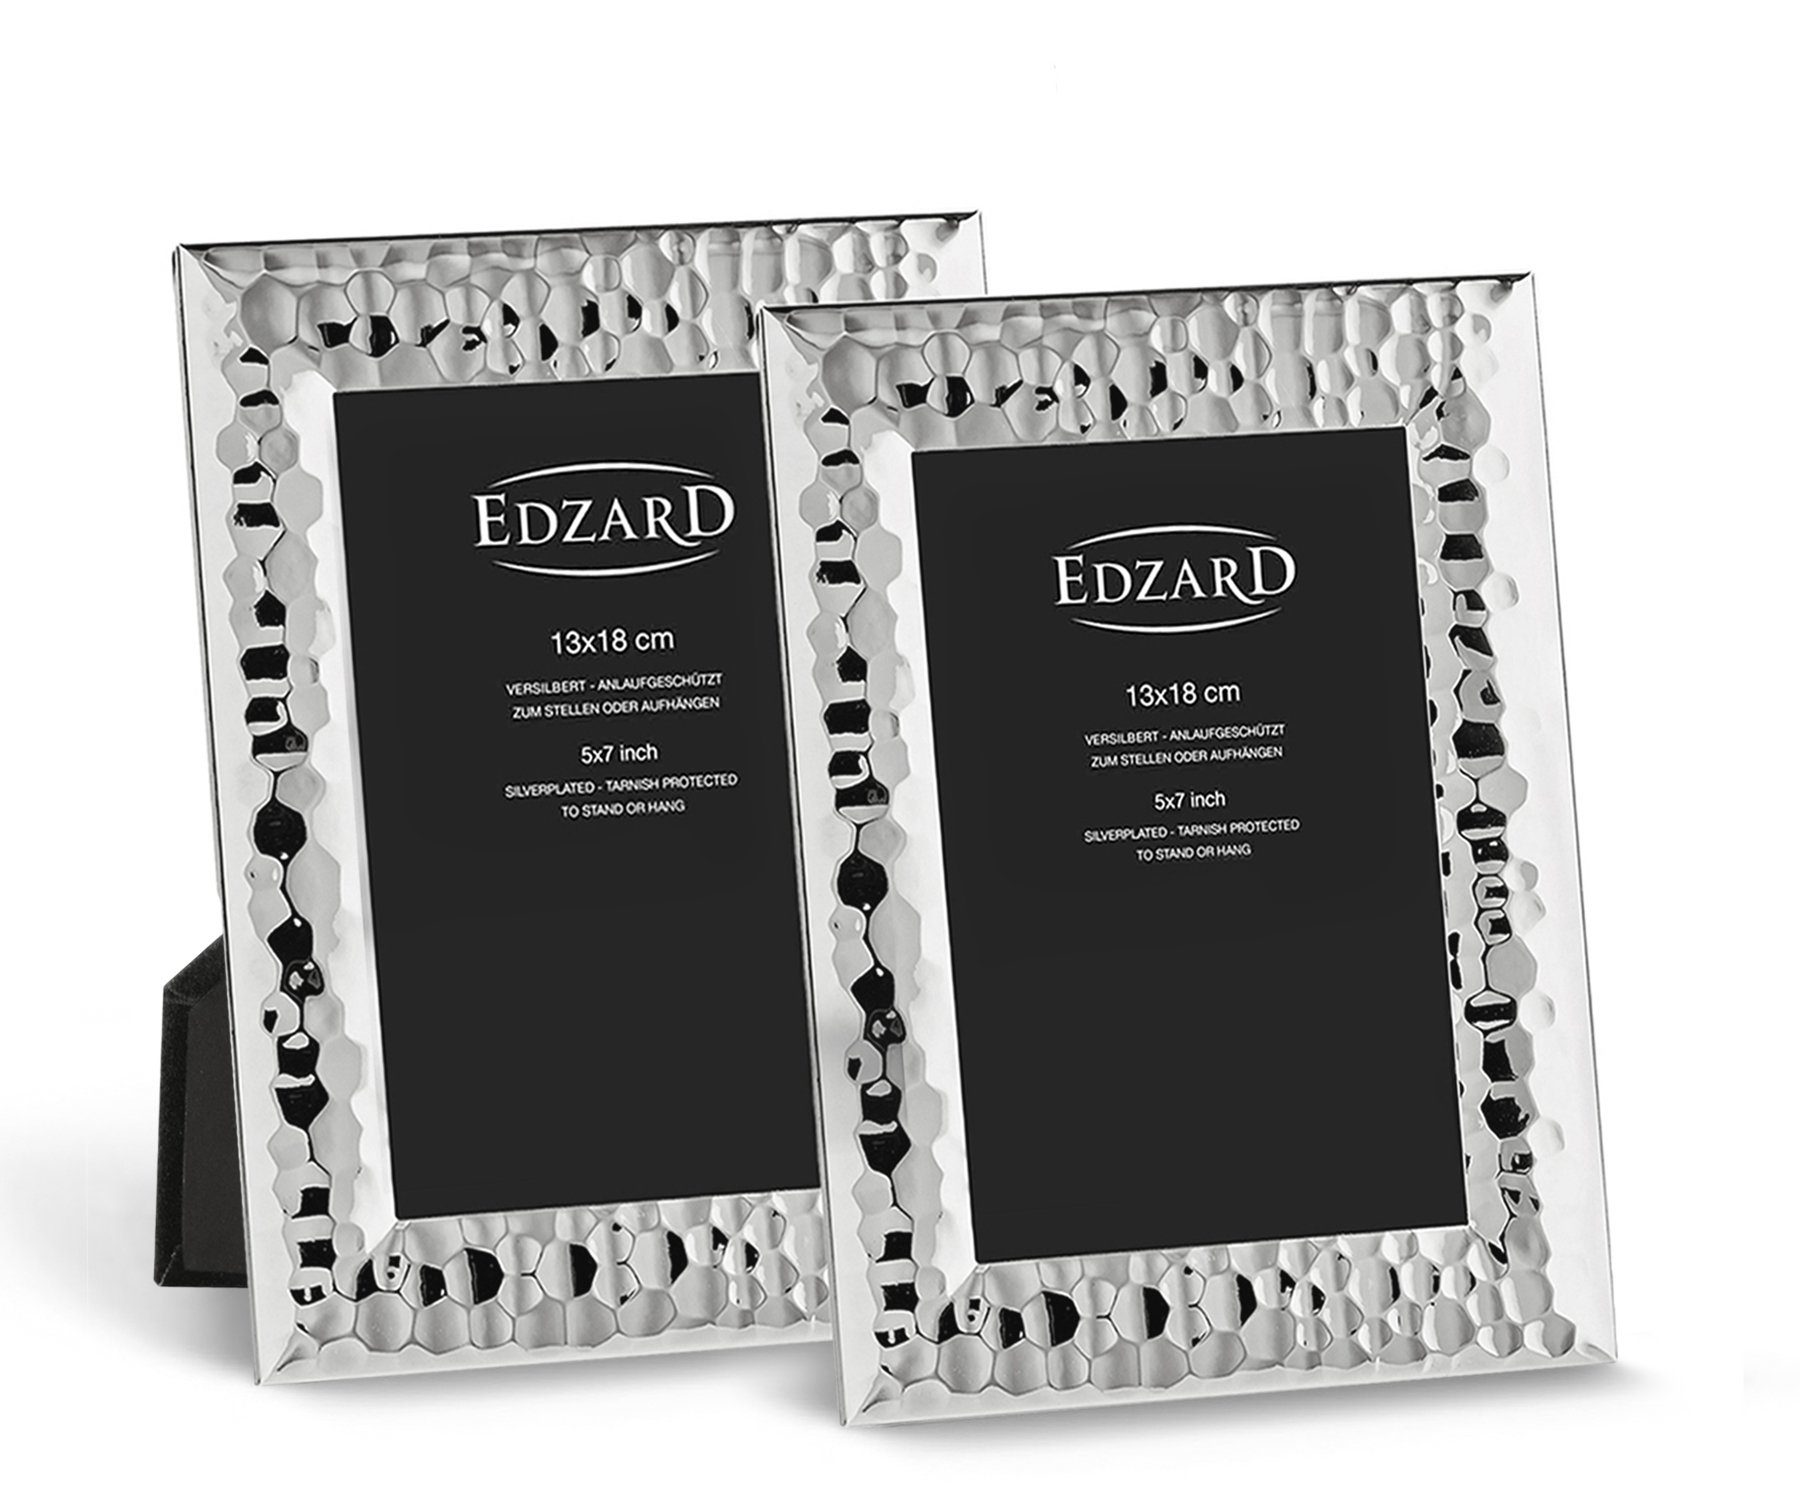 EDZARD Bilderrahmen Gubbio, versilbert und anlaufgeschützt, 2er Set für 13x18 cm Foto